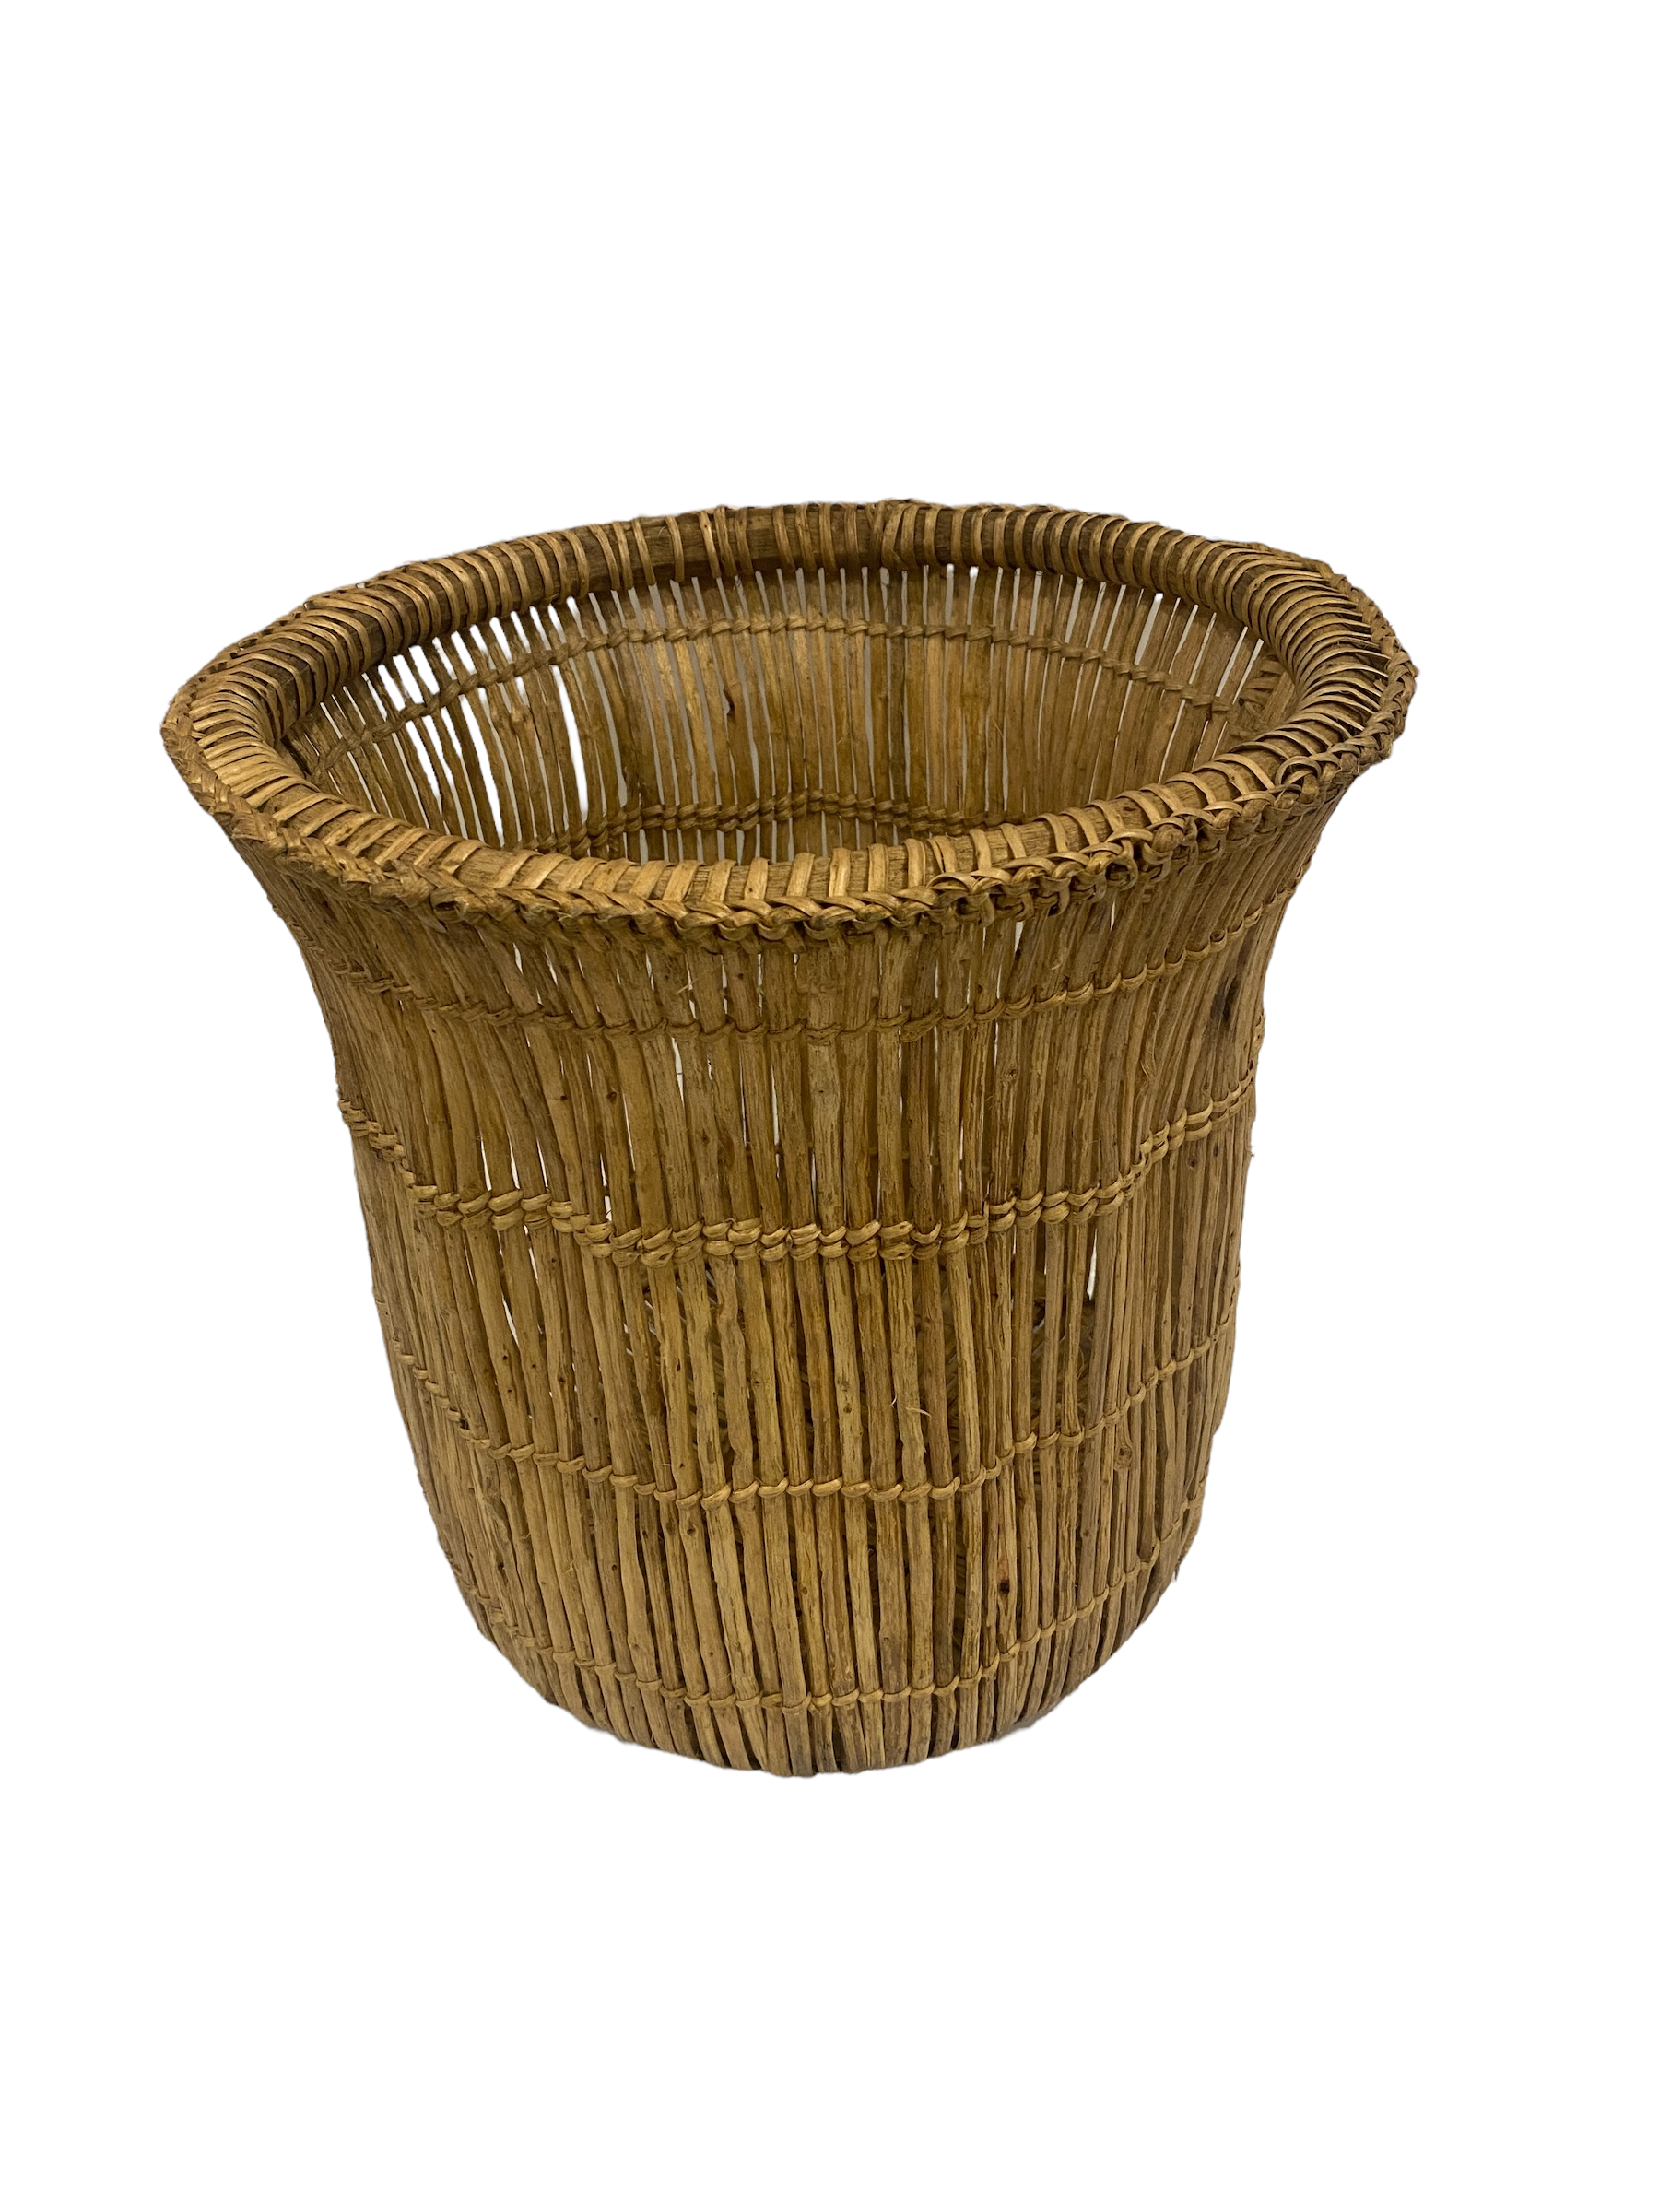 botanicalboysuk Fishing Basket - Zambia (tr63) Large